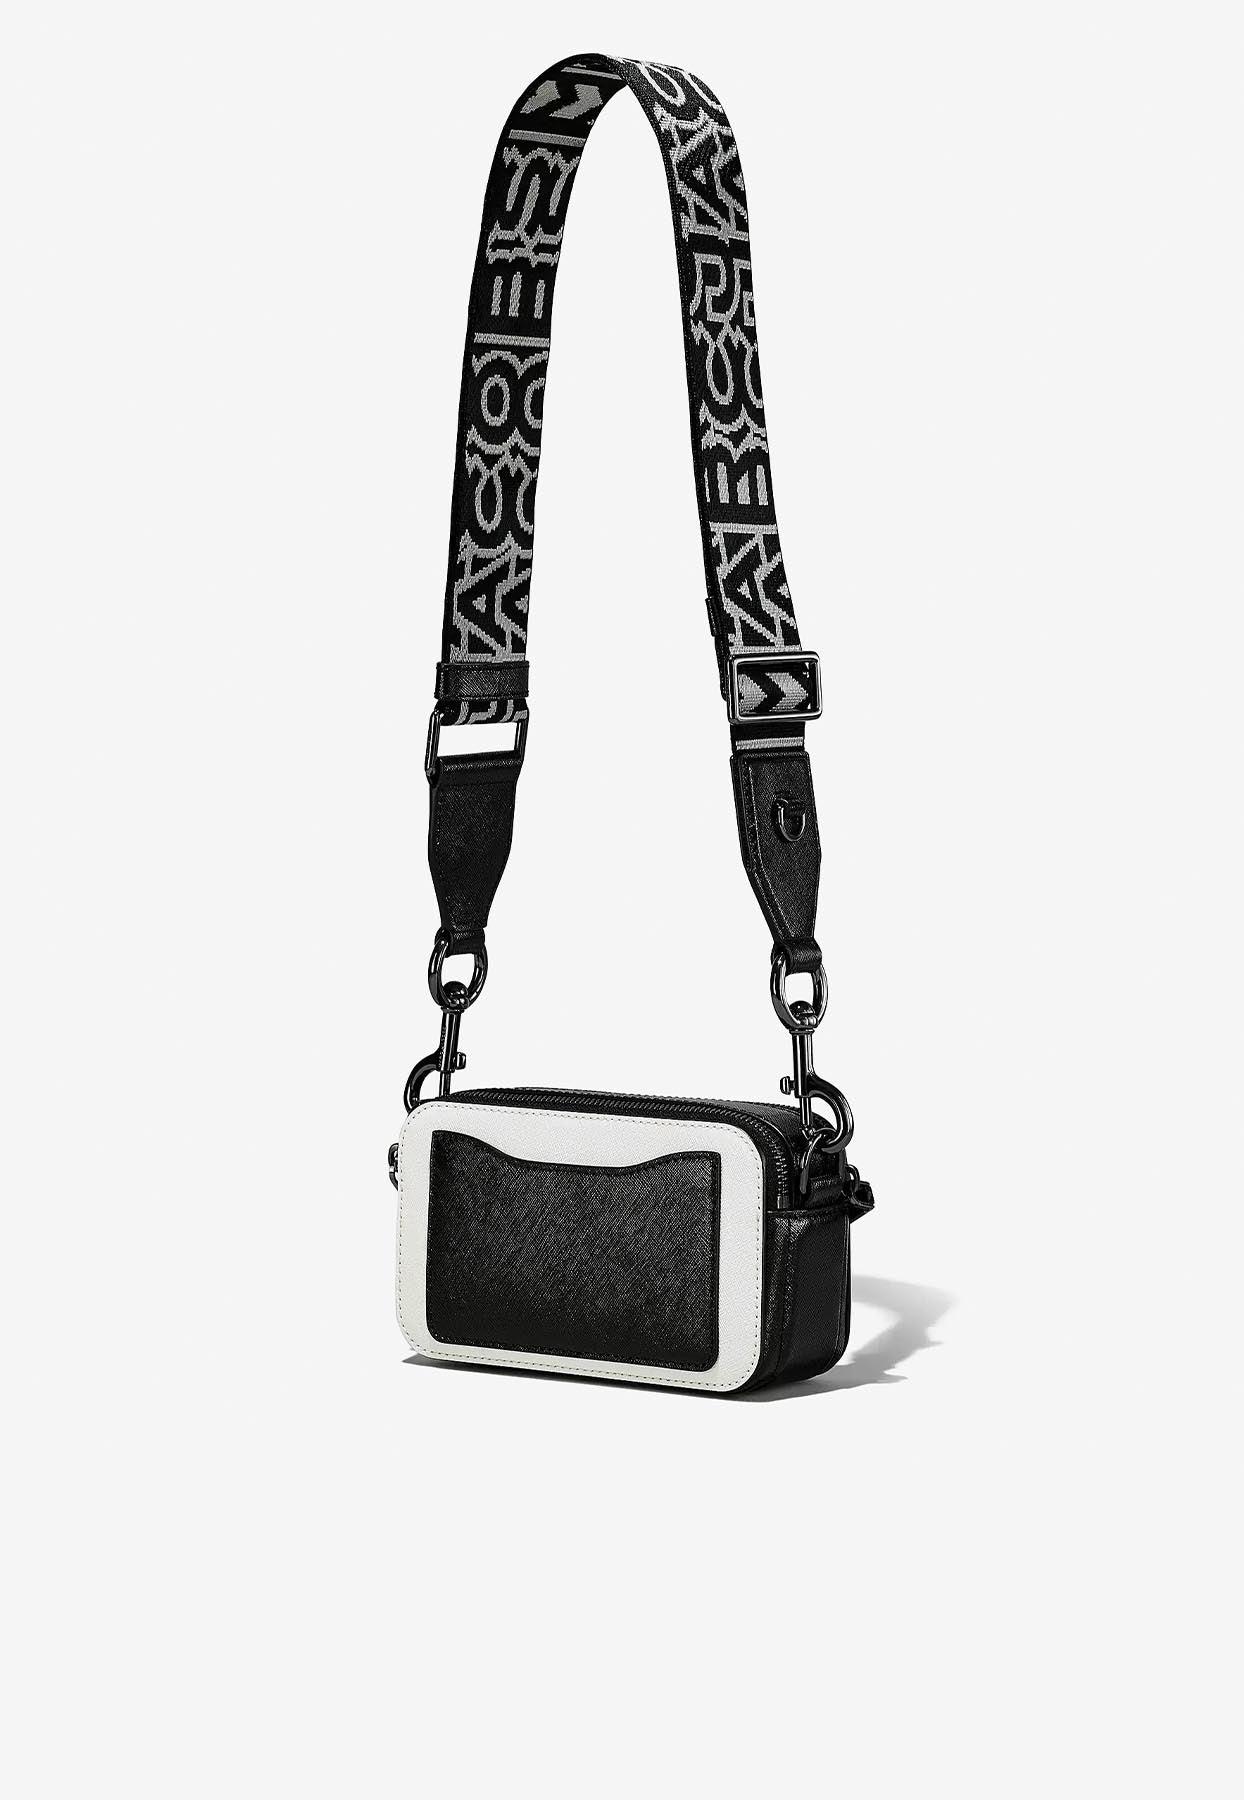 Snapshot Shoulder Bag - Marc Jacobs - Leather - Black Pony-style